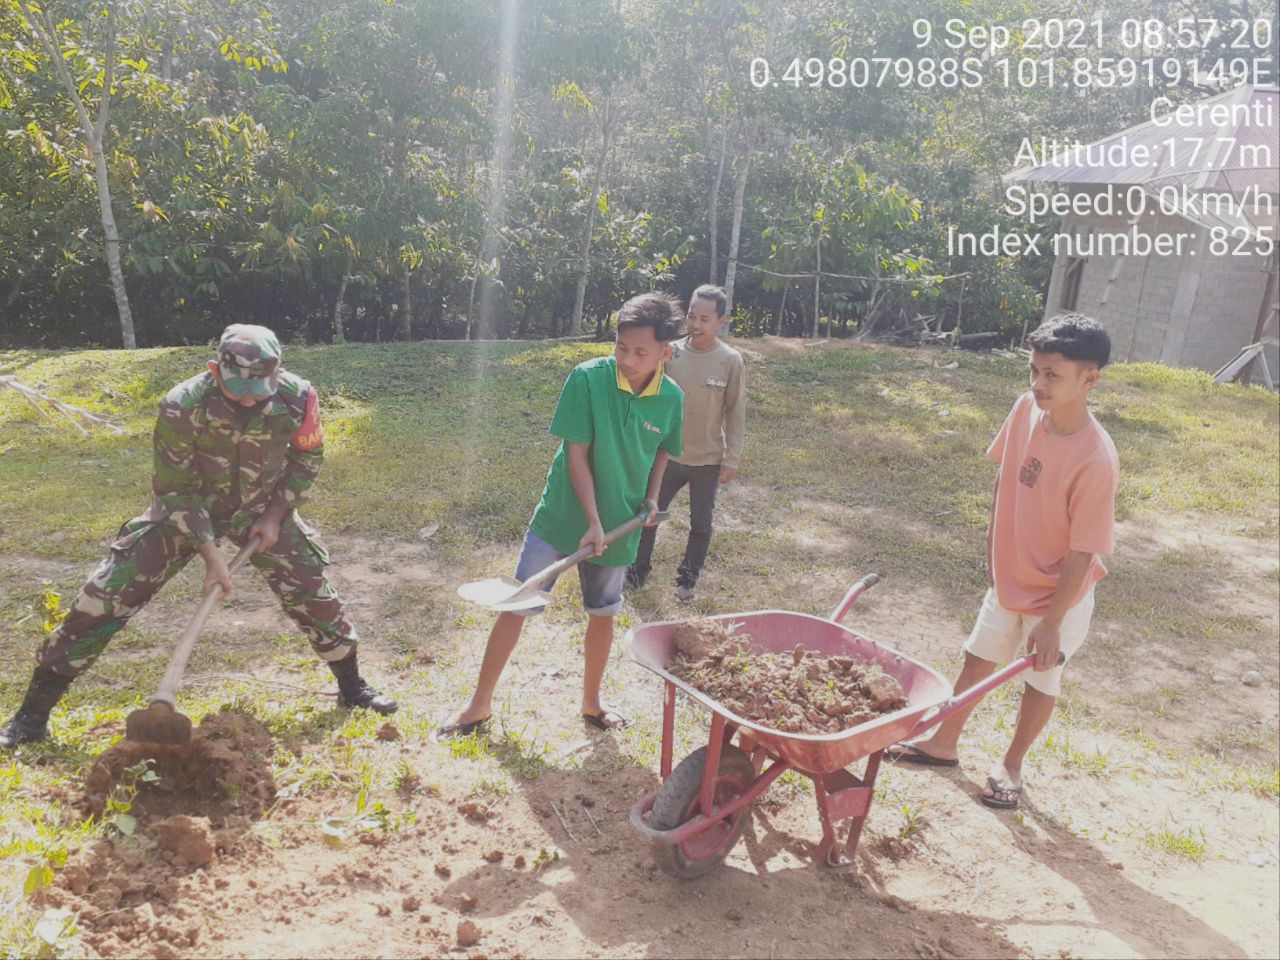 Babinsa Koramil 06/Cerenti Dim 0302/ Inhu Gontong Royong Membantu Menimbun Pondasi Rumah di Desa Pulau Sipan